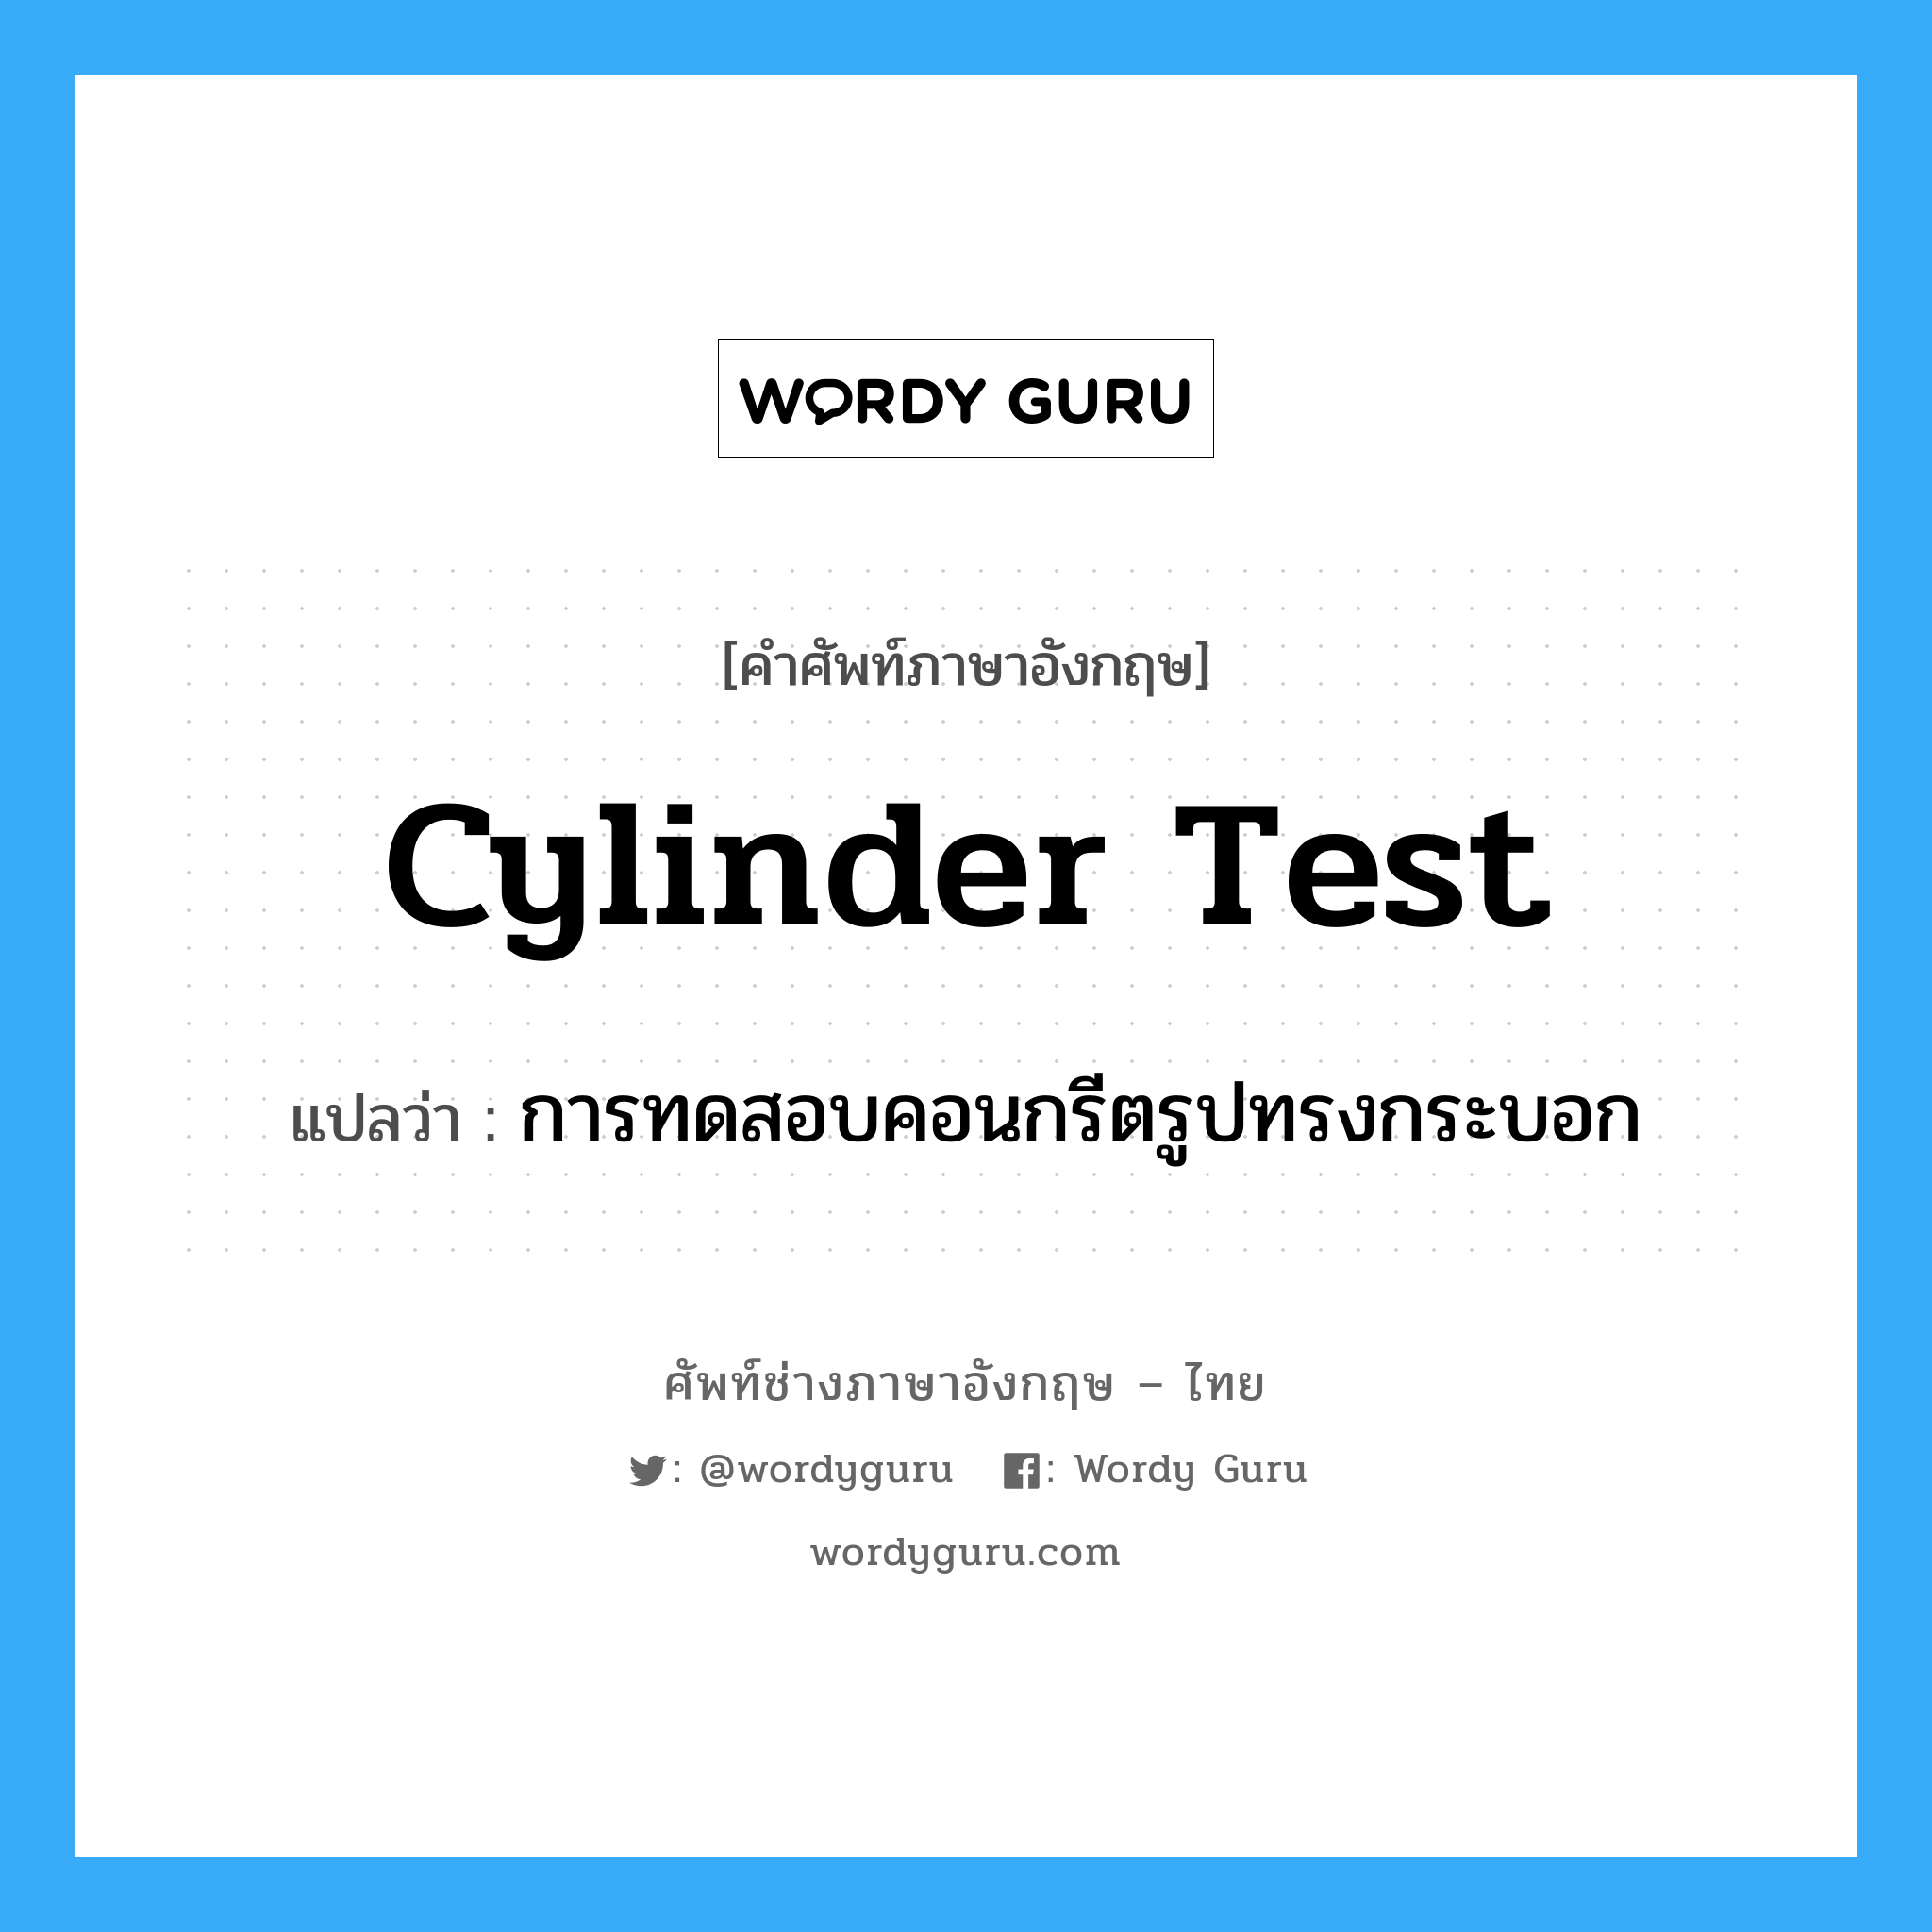 การทดสอบคอนกรีตรูปทรงกระบอก ภาษาอังกฤษ?, คำศัพท์ช่างภาษาอังกฤษ - ไทย การทดสอบคอนกรีตรูปทรงกระบอก คำศัพท์ภาษาอังกฤษ การทดสอบคอนกรีตรูปทรงกระบอก แปลว่า cylinder test